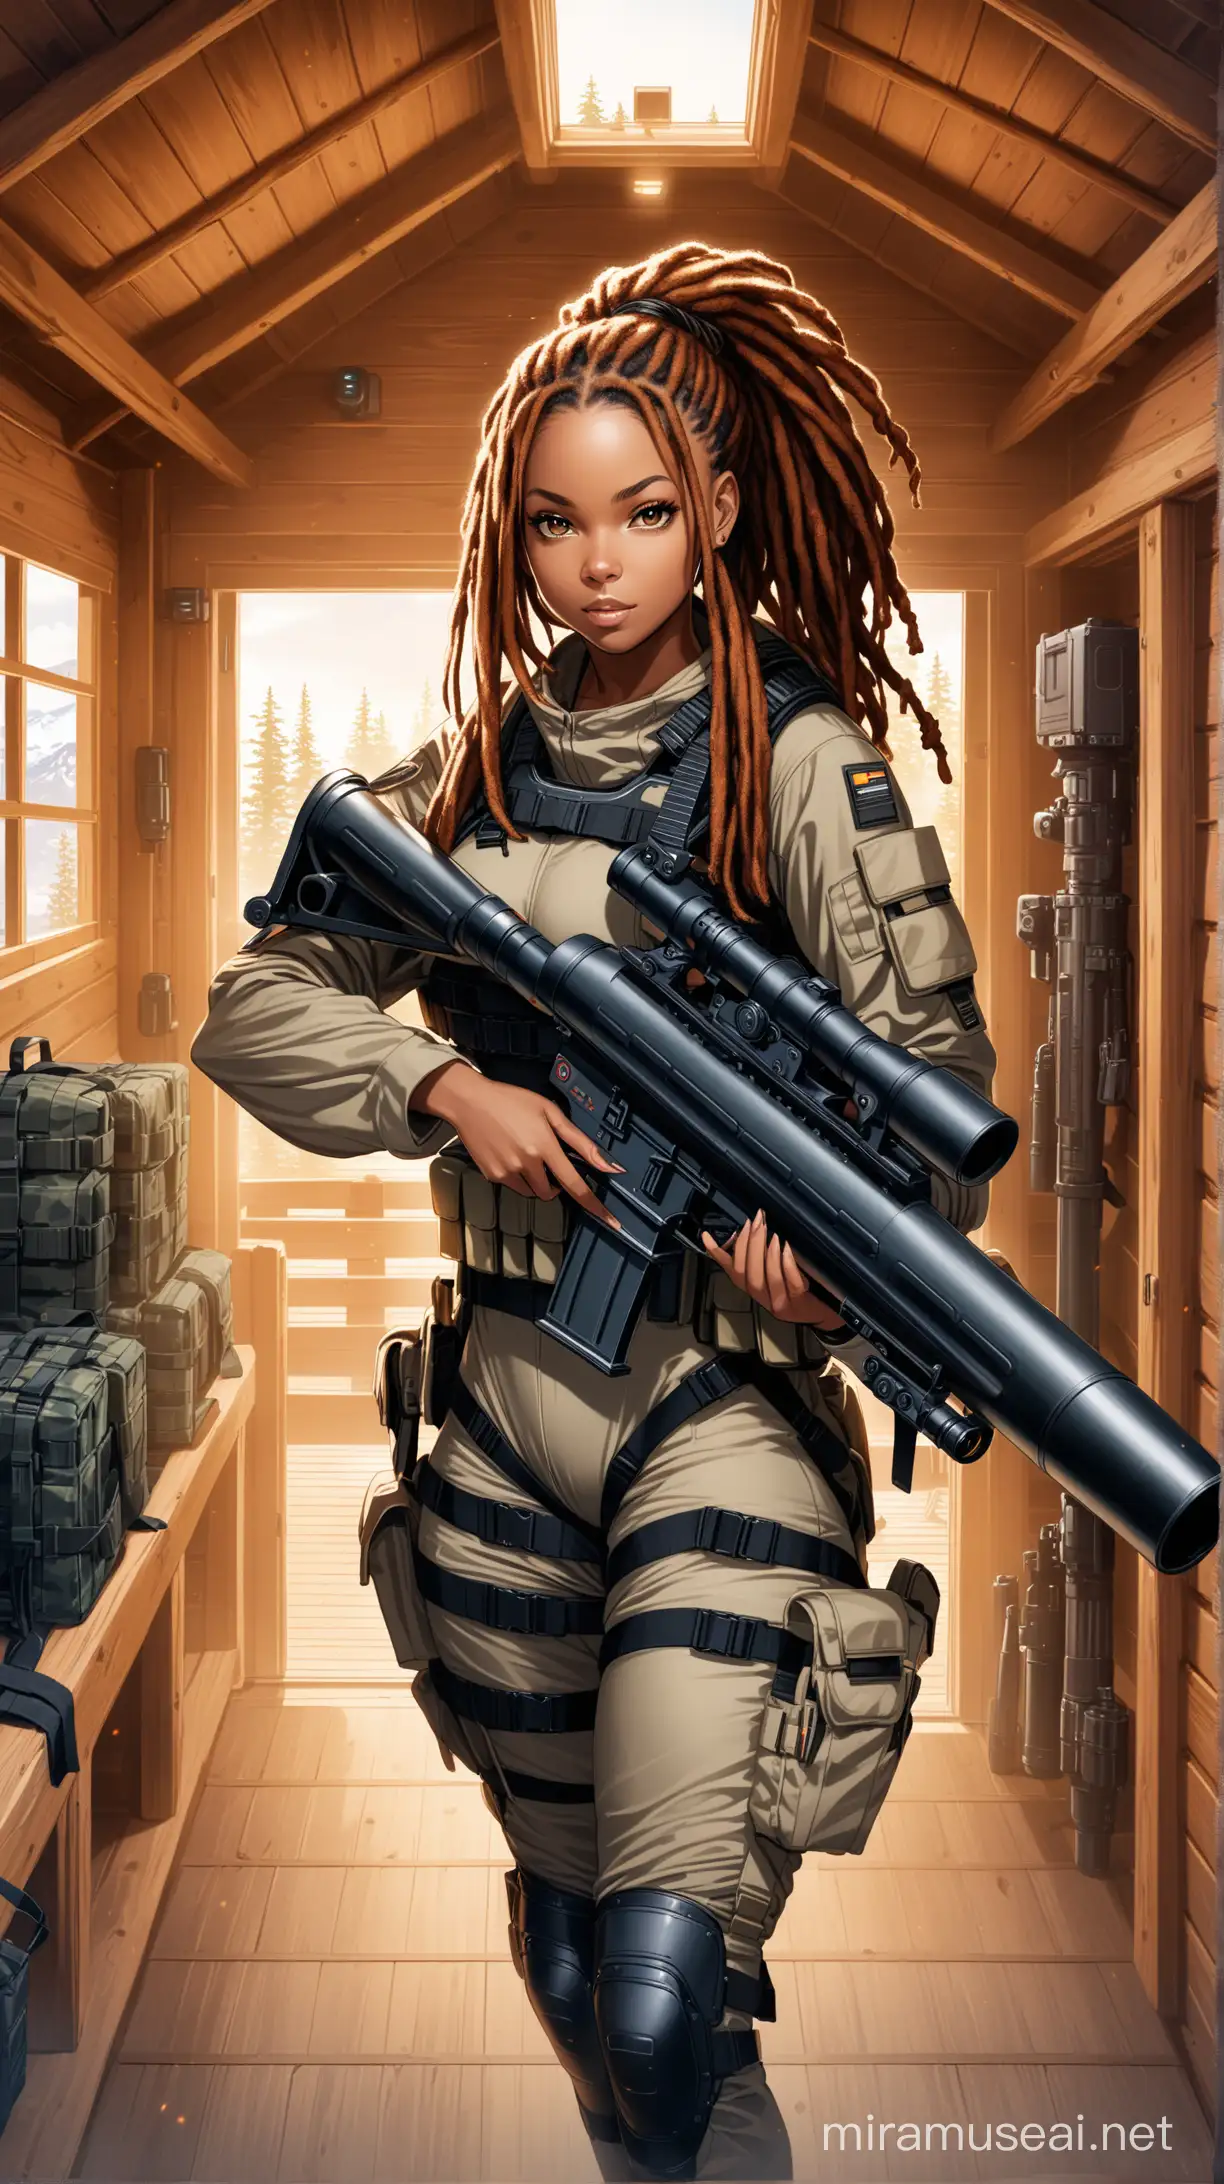 Fierce Black Woman with Dreadlocks Wielding Bazooka in HighTech Cabin